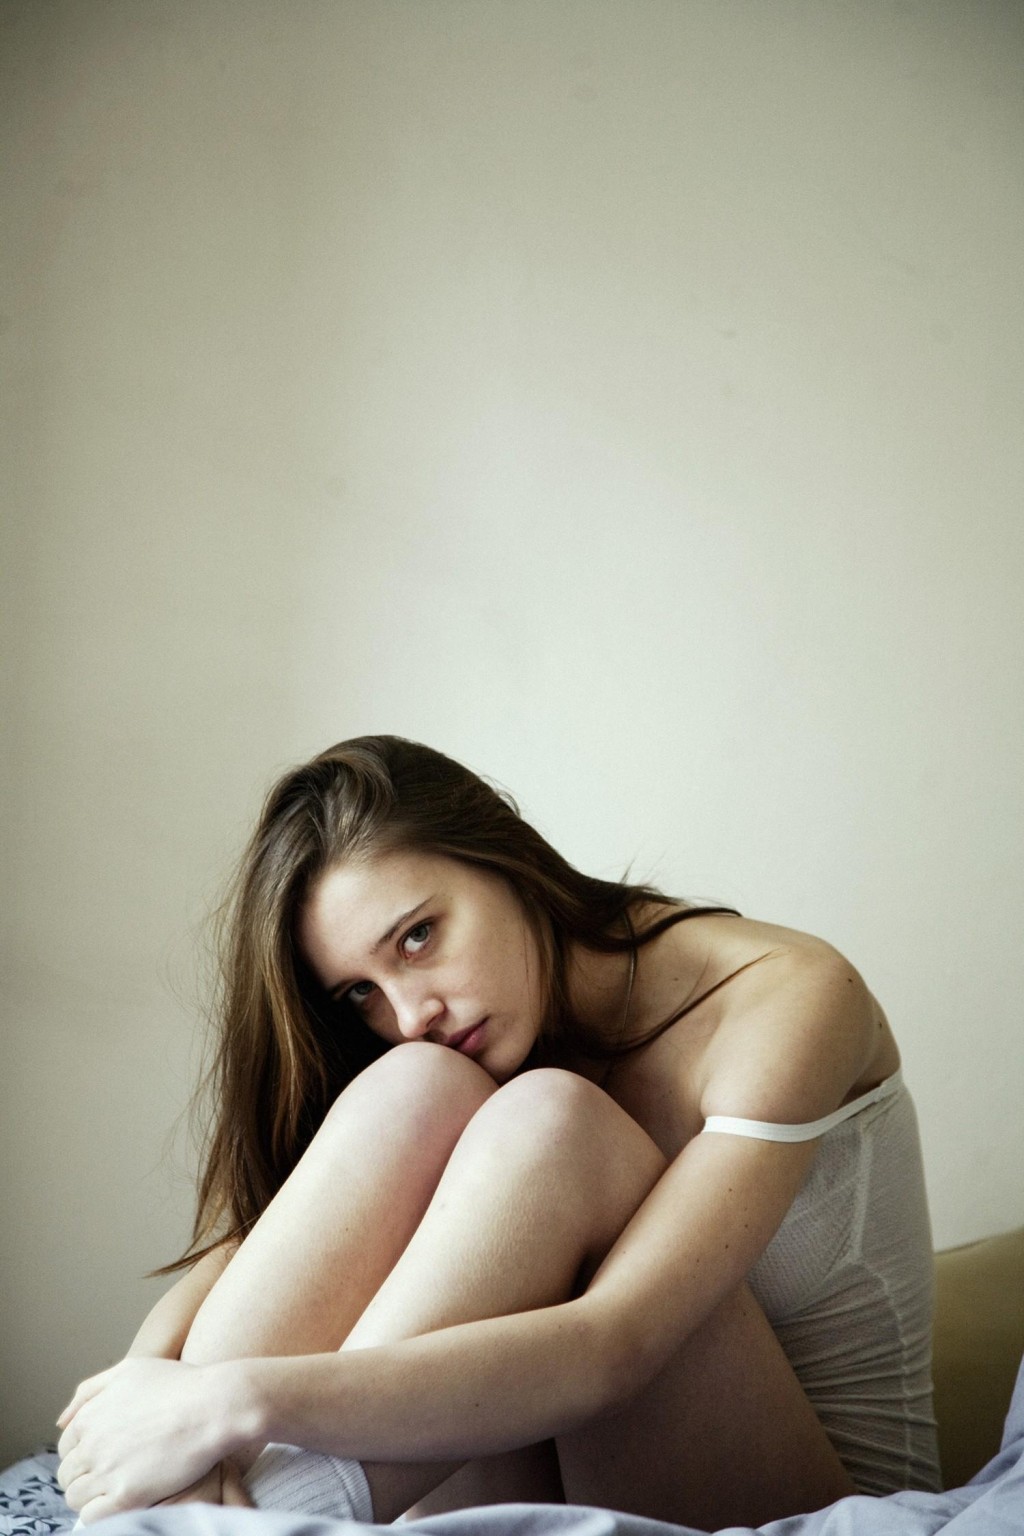 Maja simonsen zeigt ihre brüste und ihren arsch in einem chris kontos Fotoshooting
 #75208782